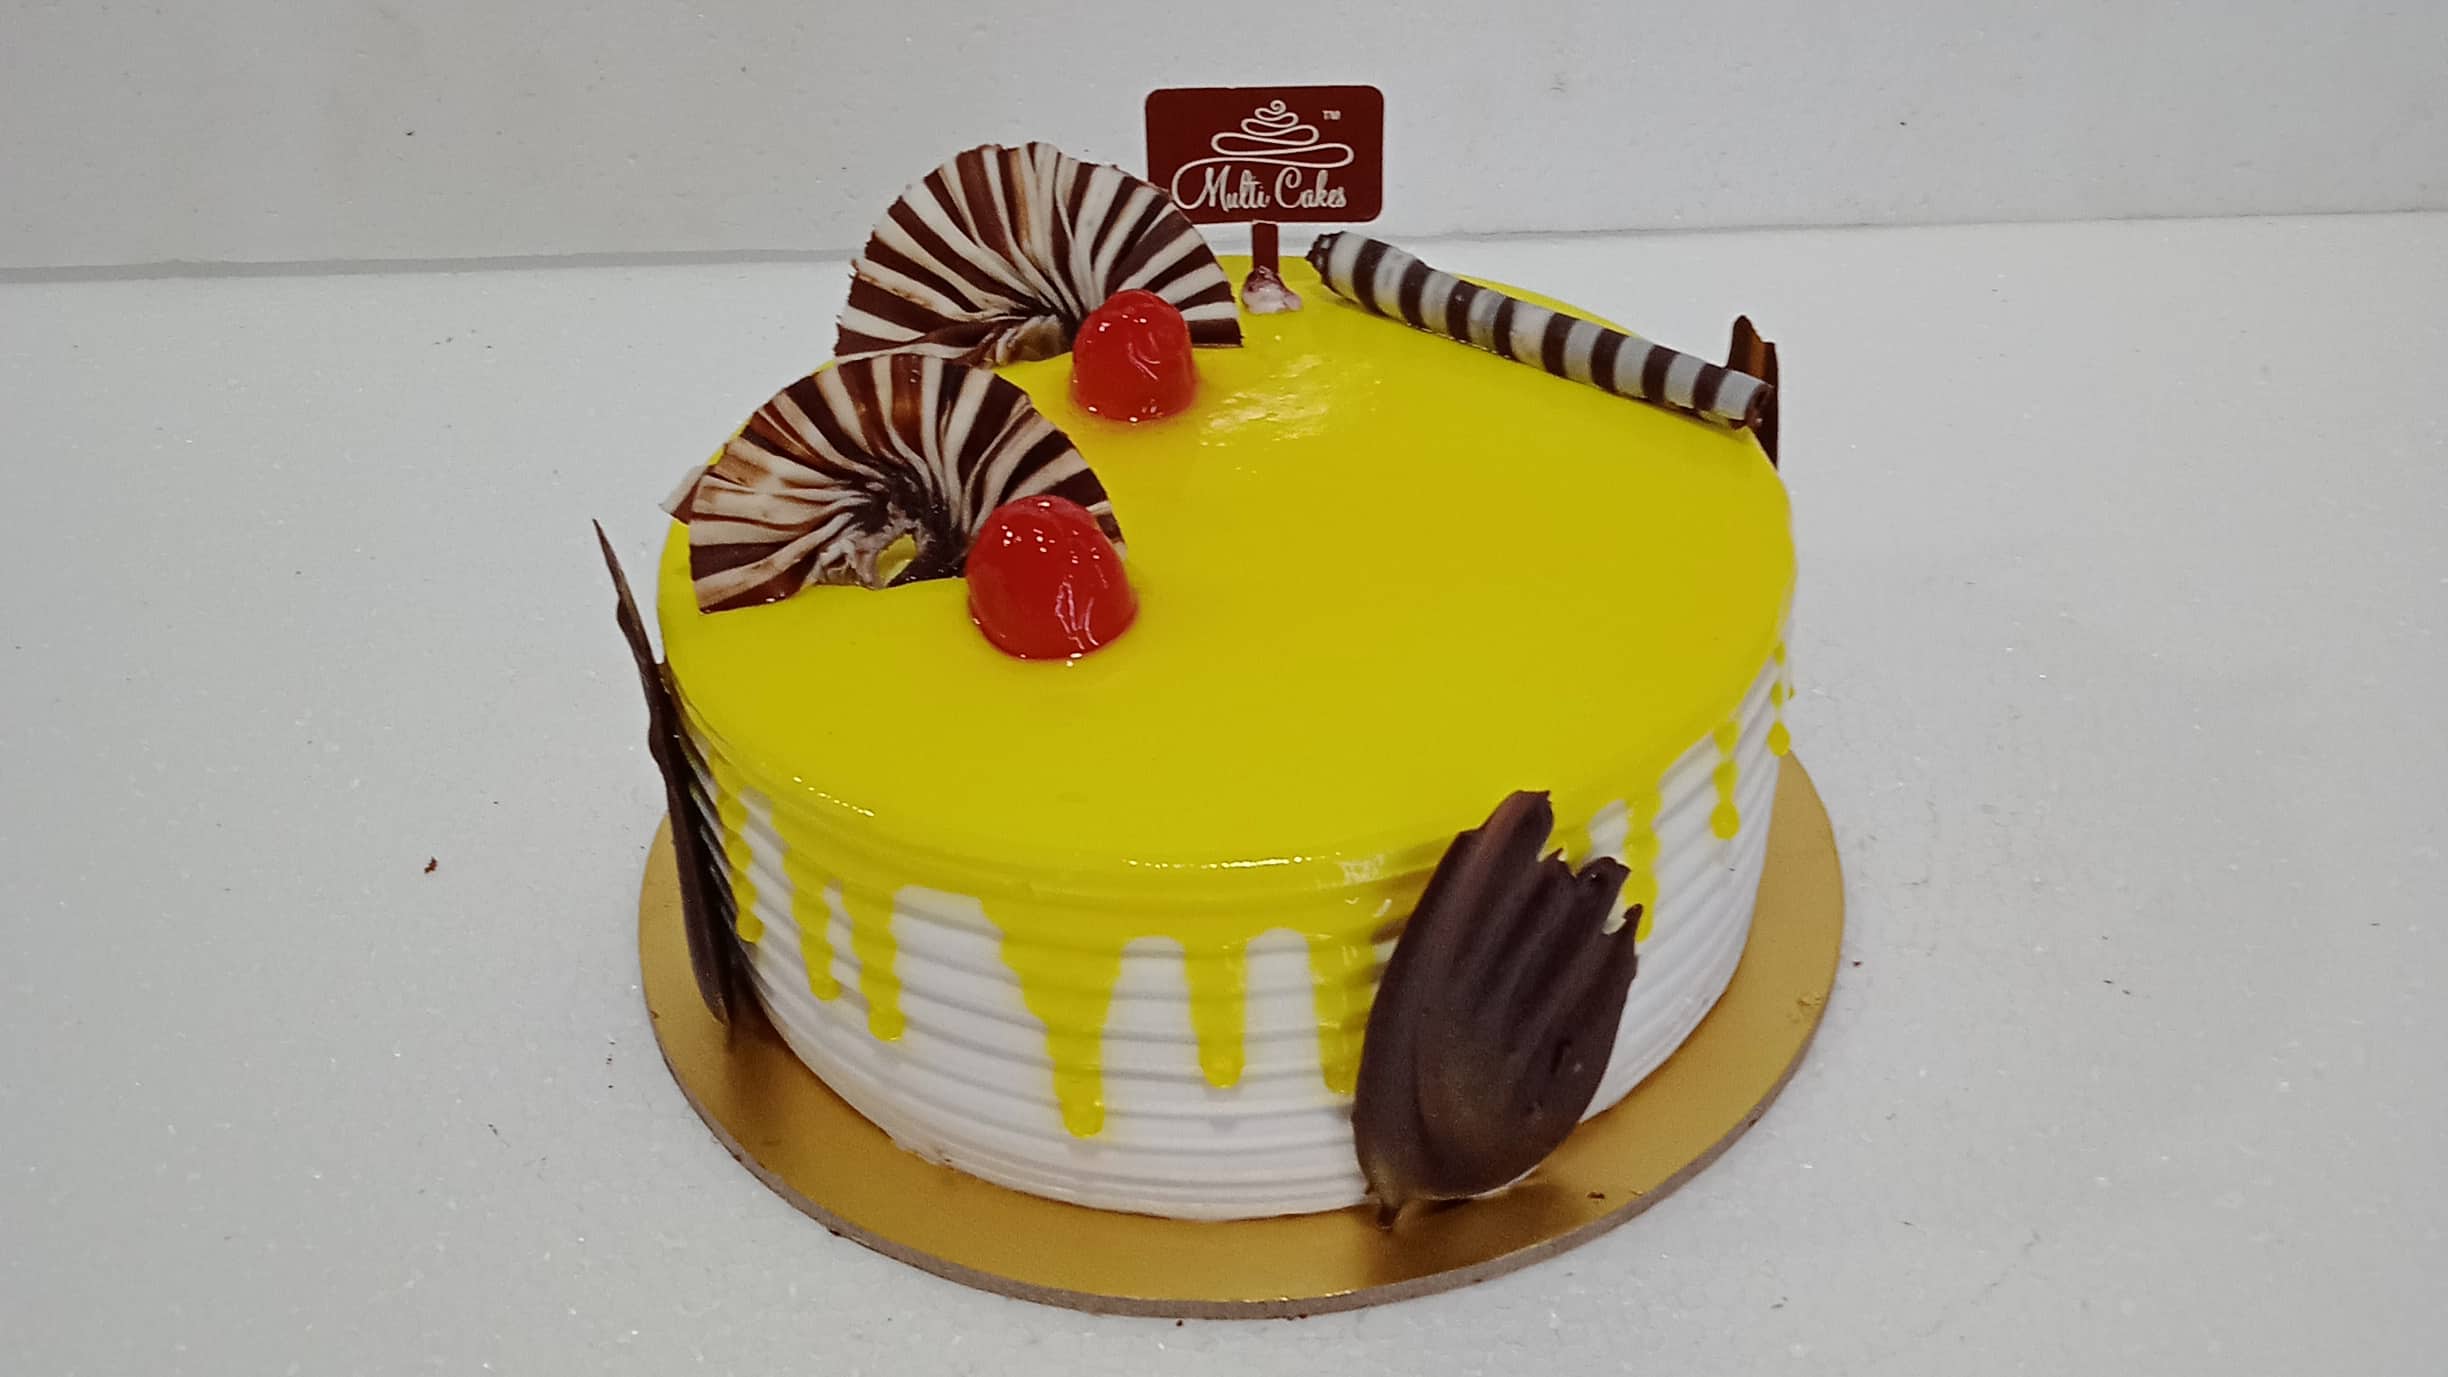 Multi Cakes, JP Nagar order online - Zomato